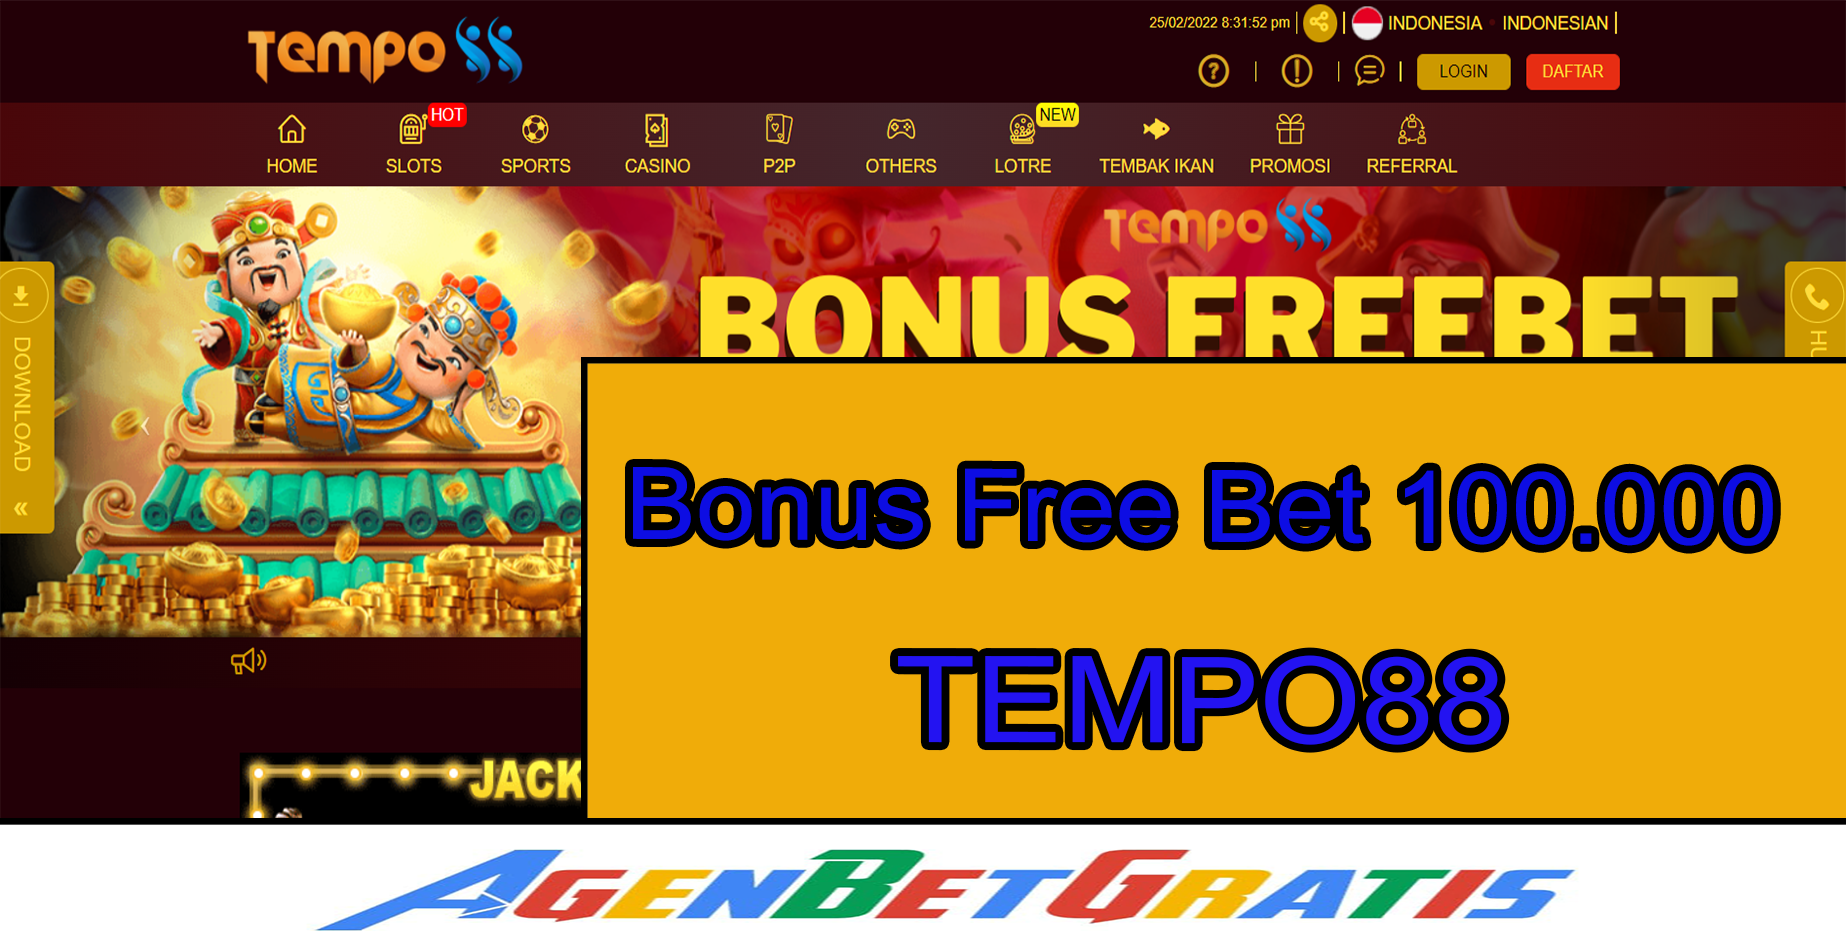 TEMPO88 - Bonus FreeBet 100.000